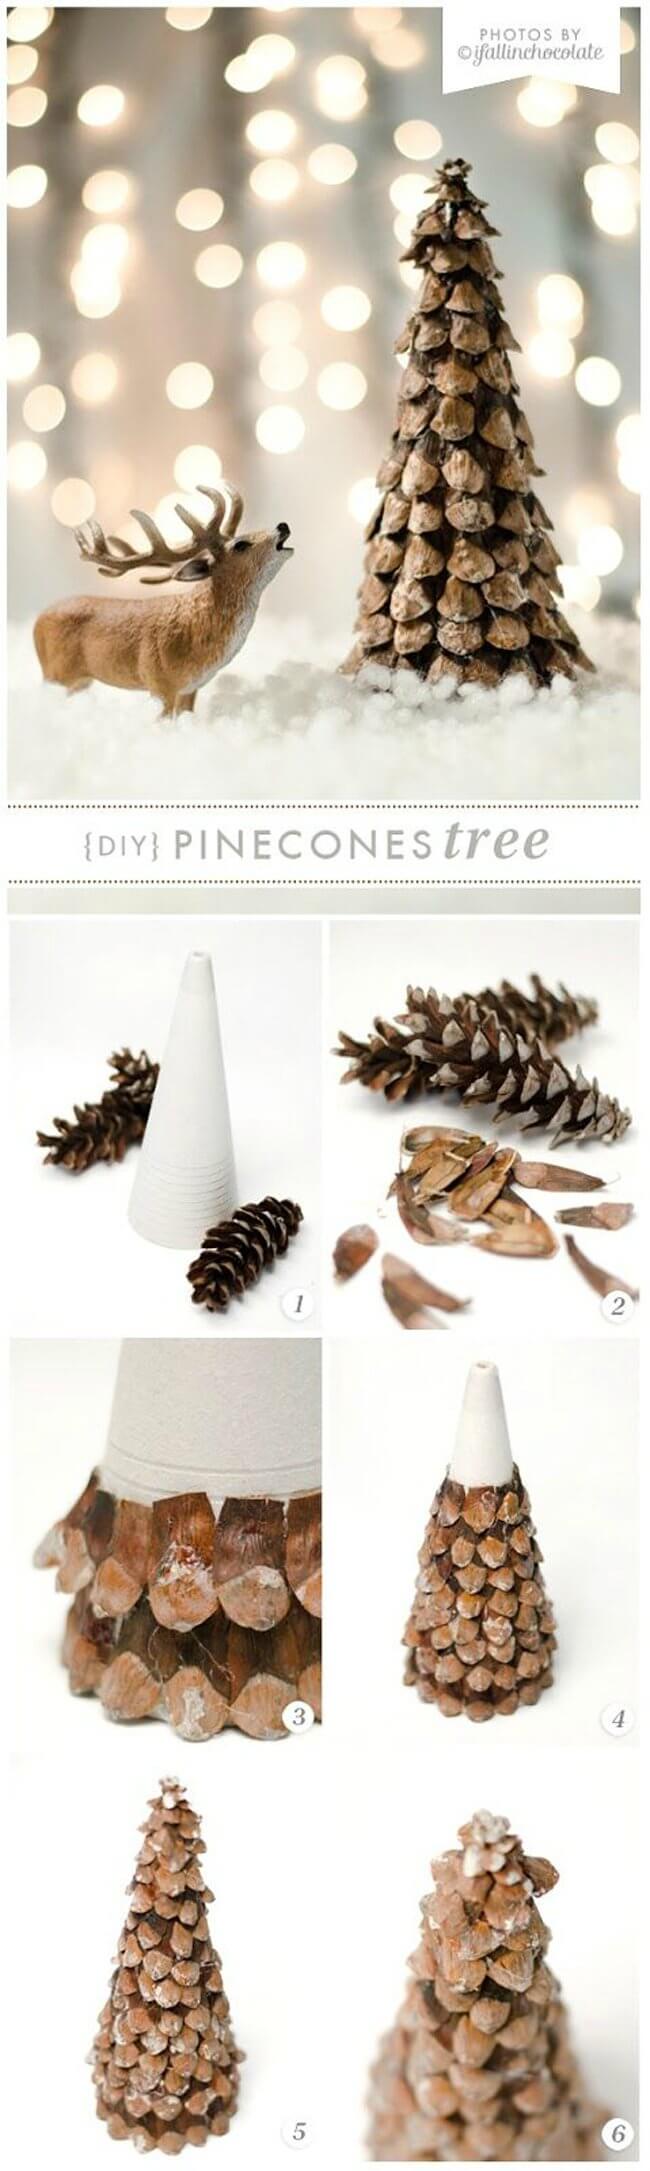 29 christmas pinecone ideas